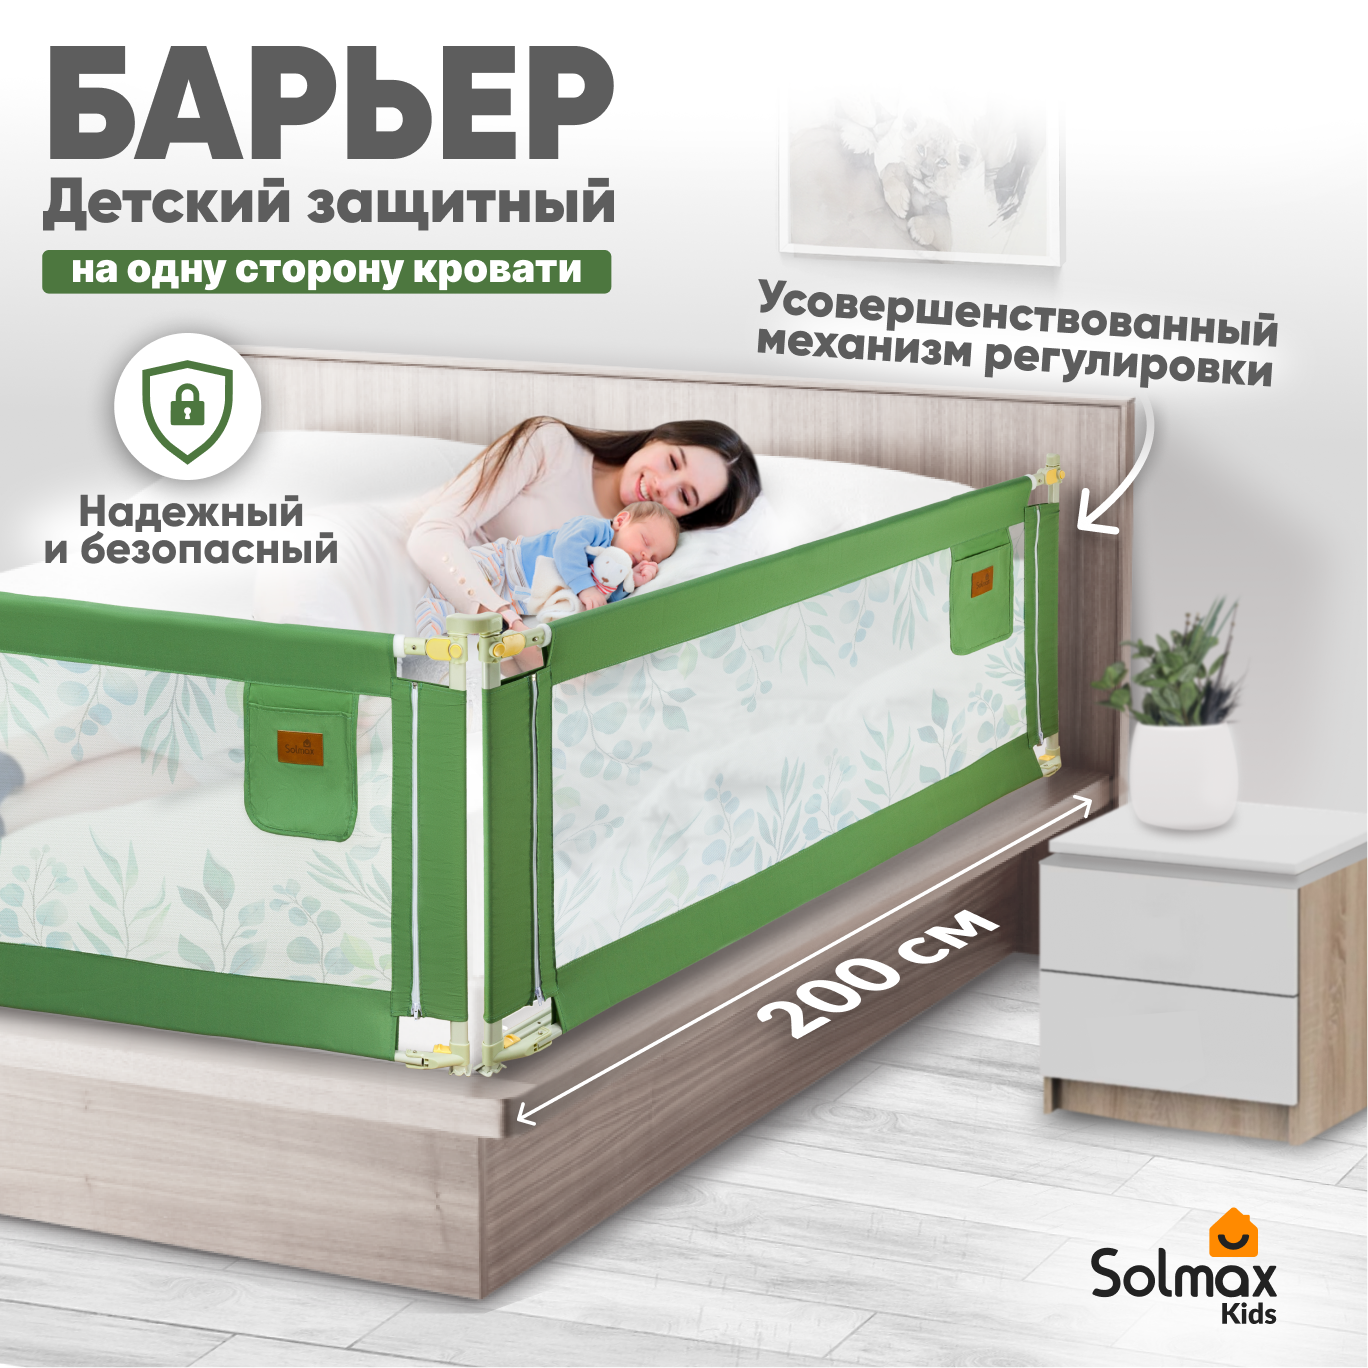 Барьер защитный для кровати от падений SOLMAX зеленый бортик в кроватку малыша 200 см барьер защитный для кровати от падений solmax синий бортик в кроватку для малыша 200 см